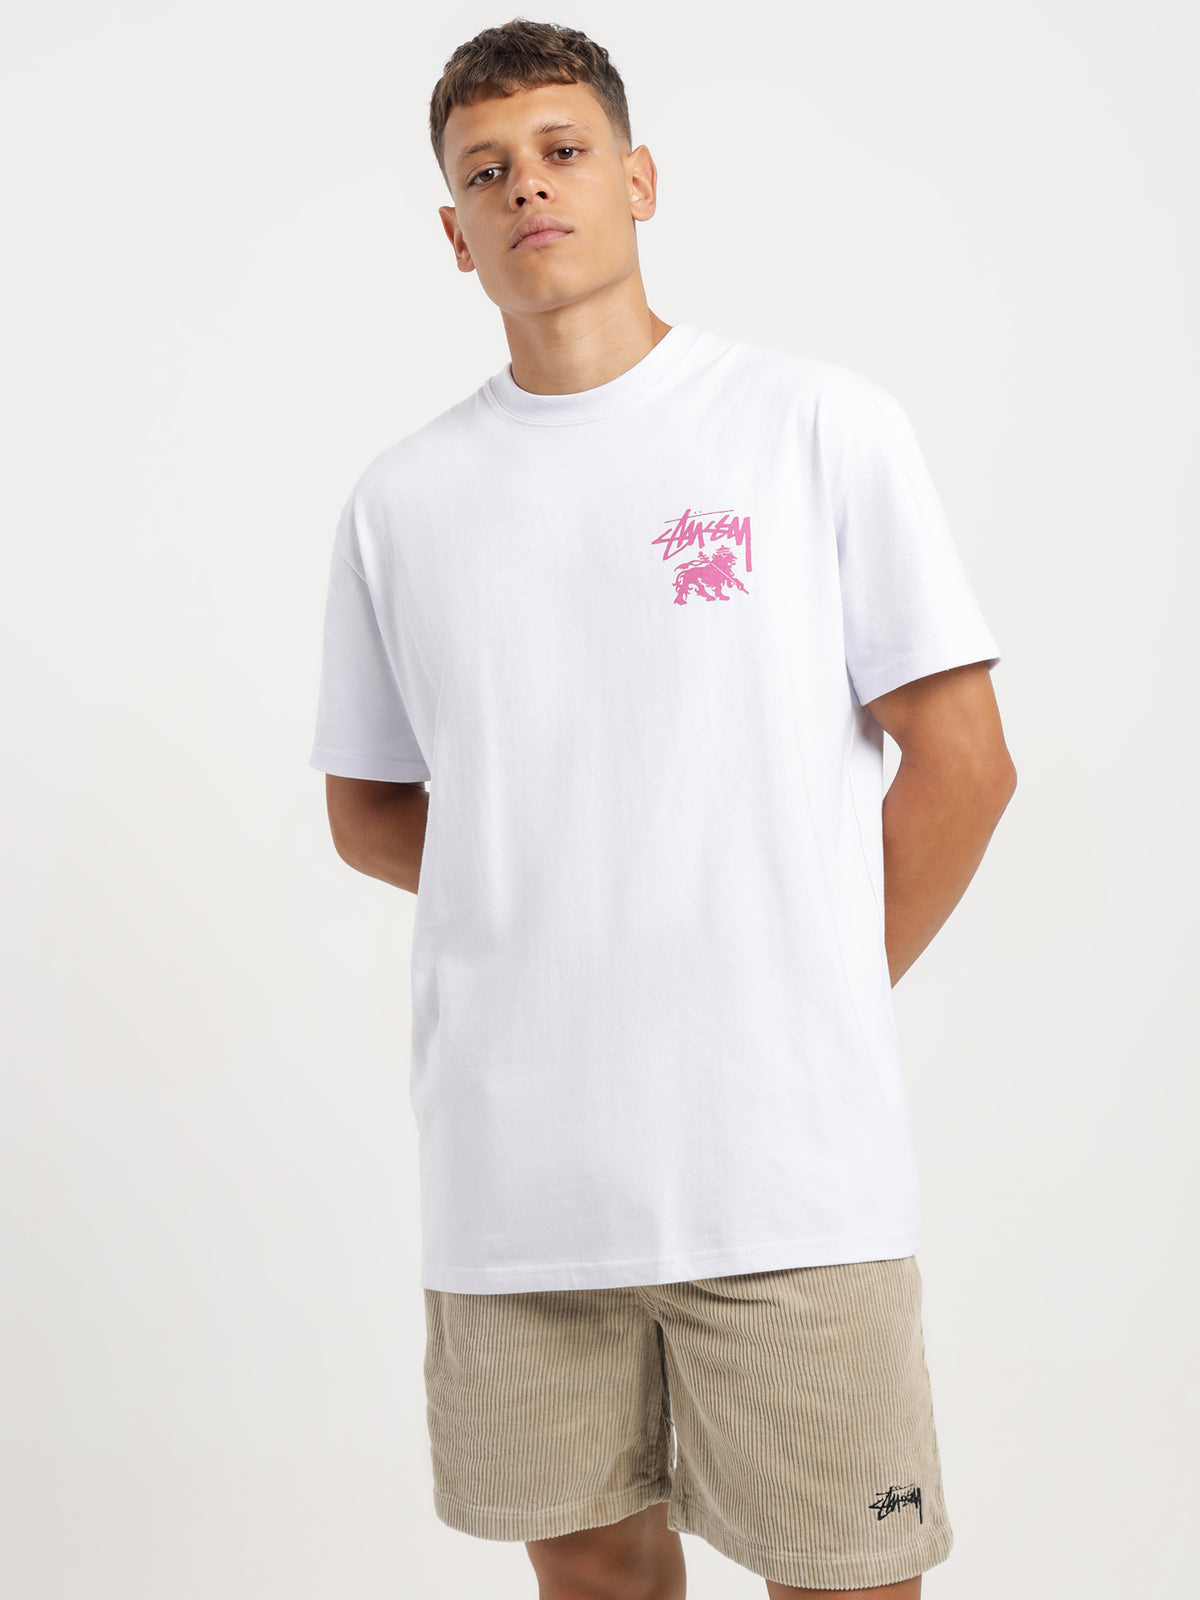 Rasta Dot 50/50 Short Sleeve T-Shirt in White